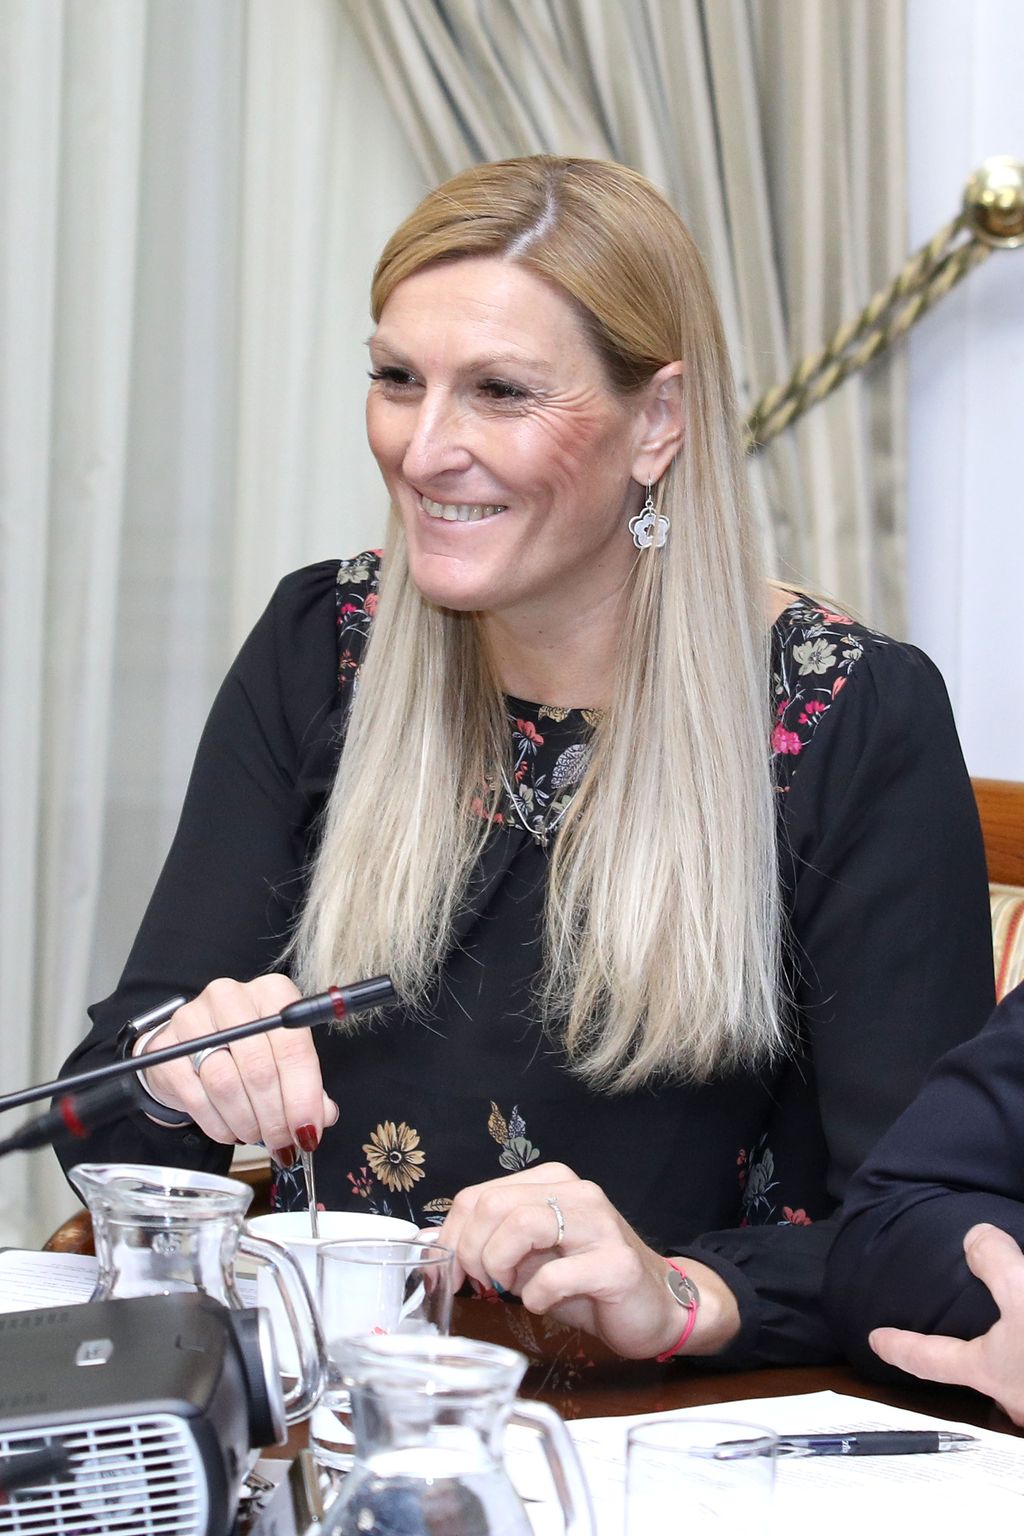 Janica Kostelić (FOTO: Patrik Macek/PIXSELL)